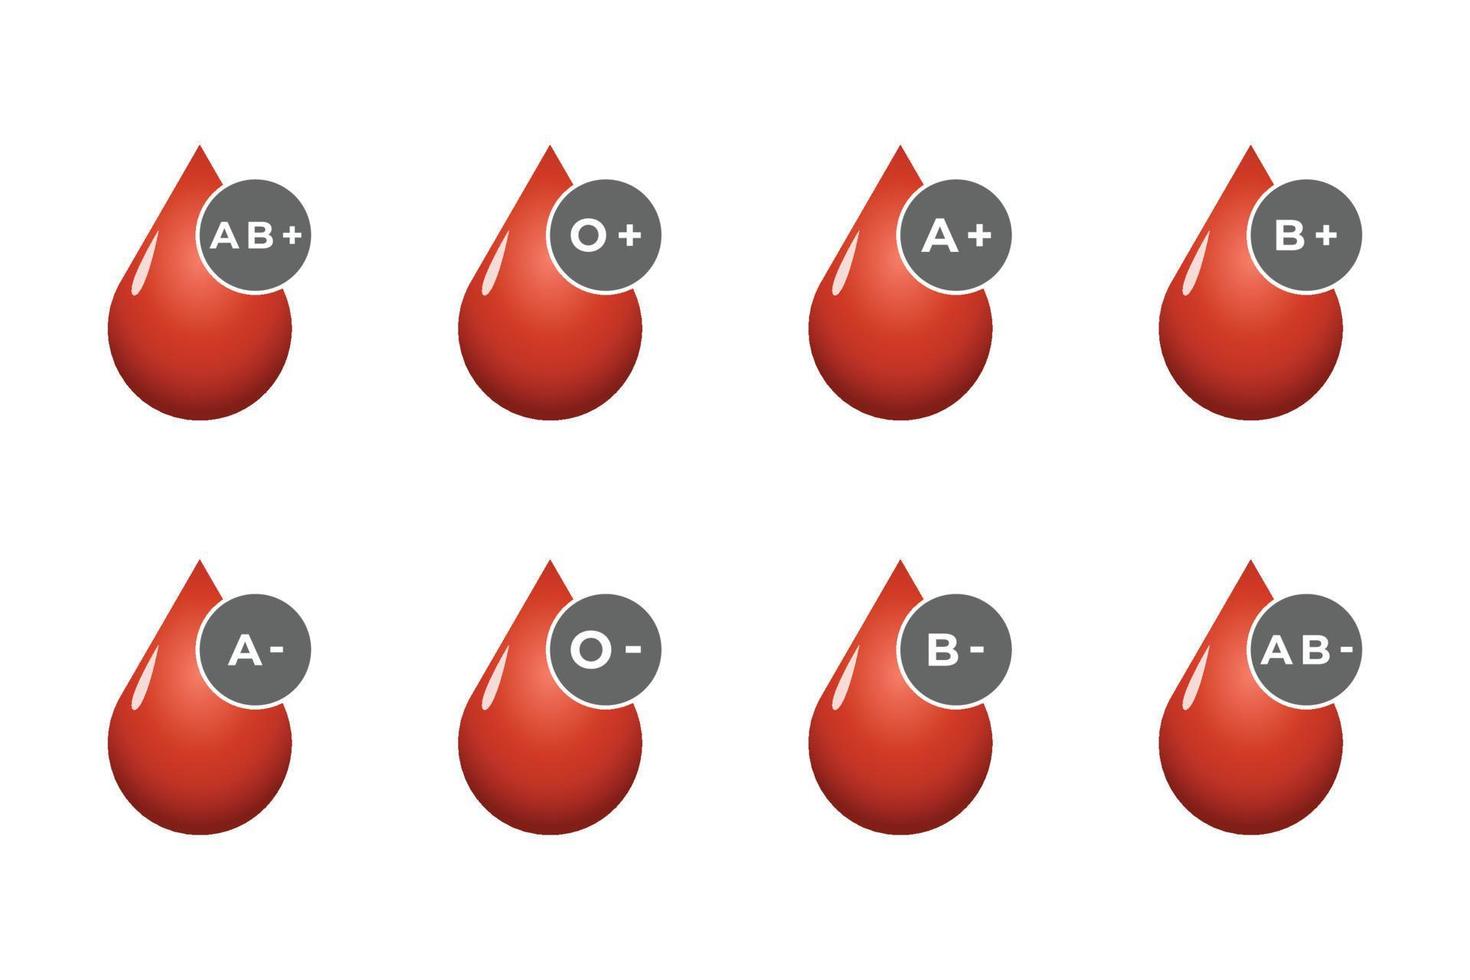 bloed bijdrage vector illustratie met rood hart en laten vallen balie.